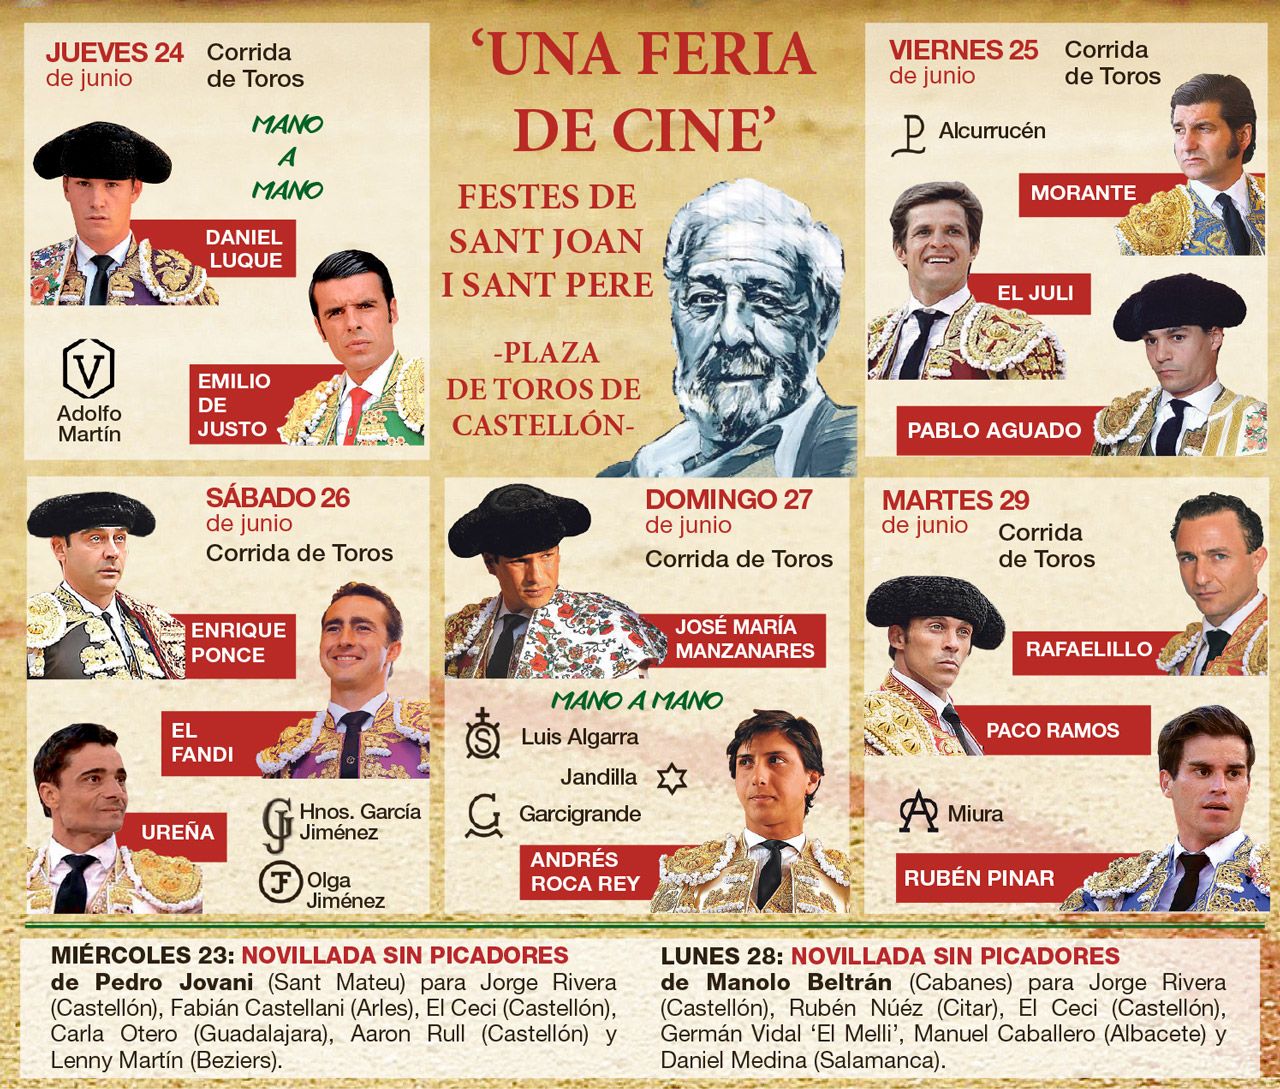 Cartel completo de la Feria que está dedicada al cineasta García Berlanga con motivo del centenario de su nacimiento.